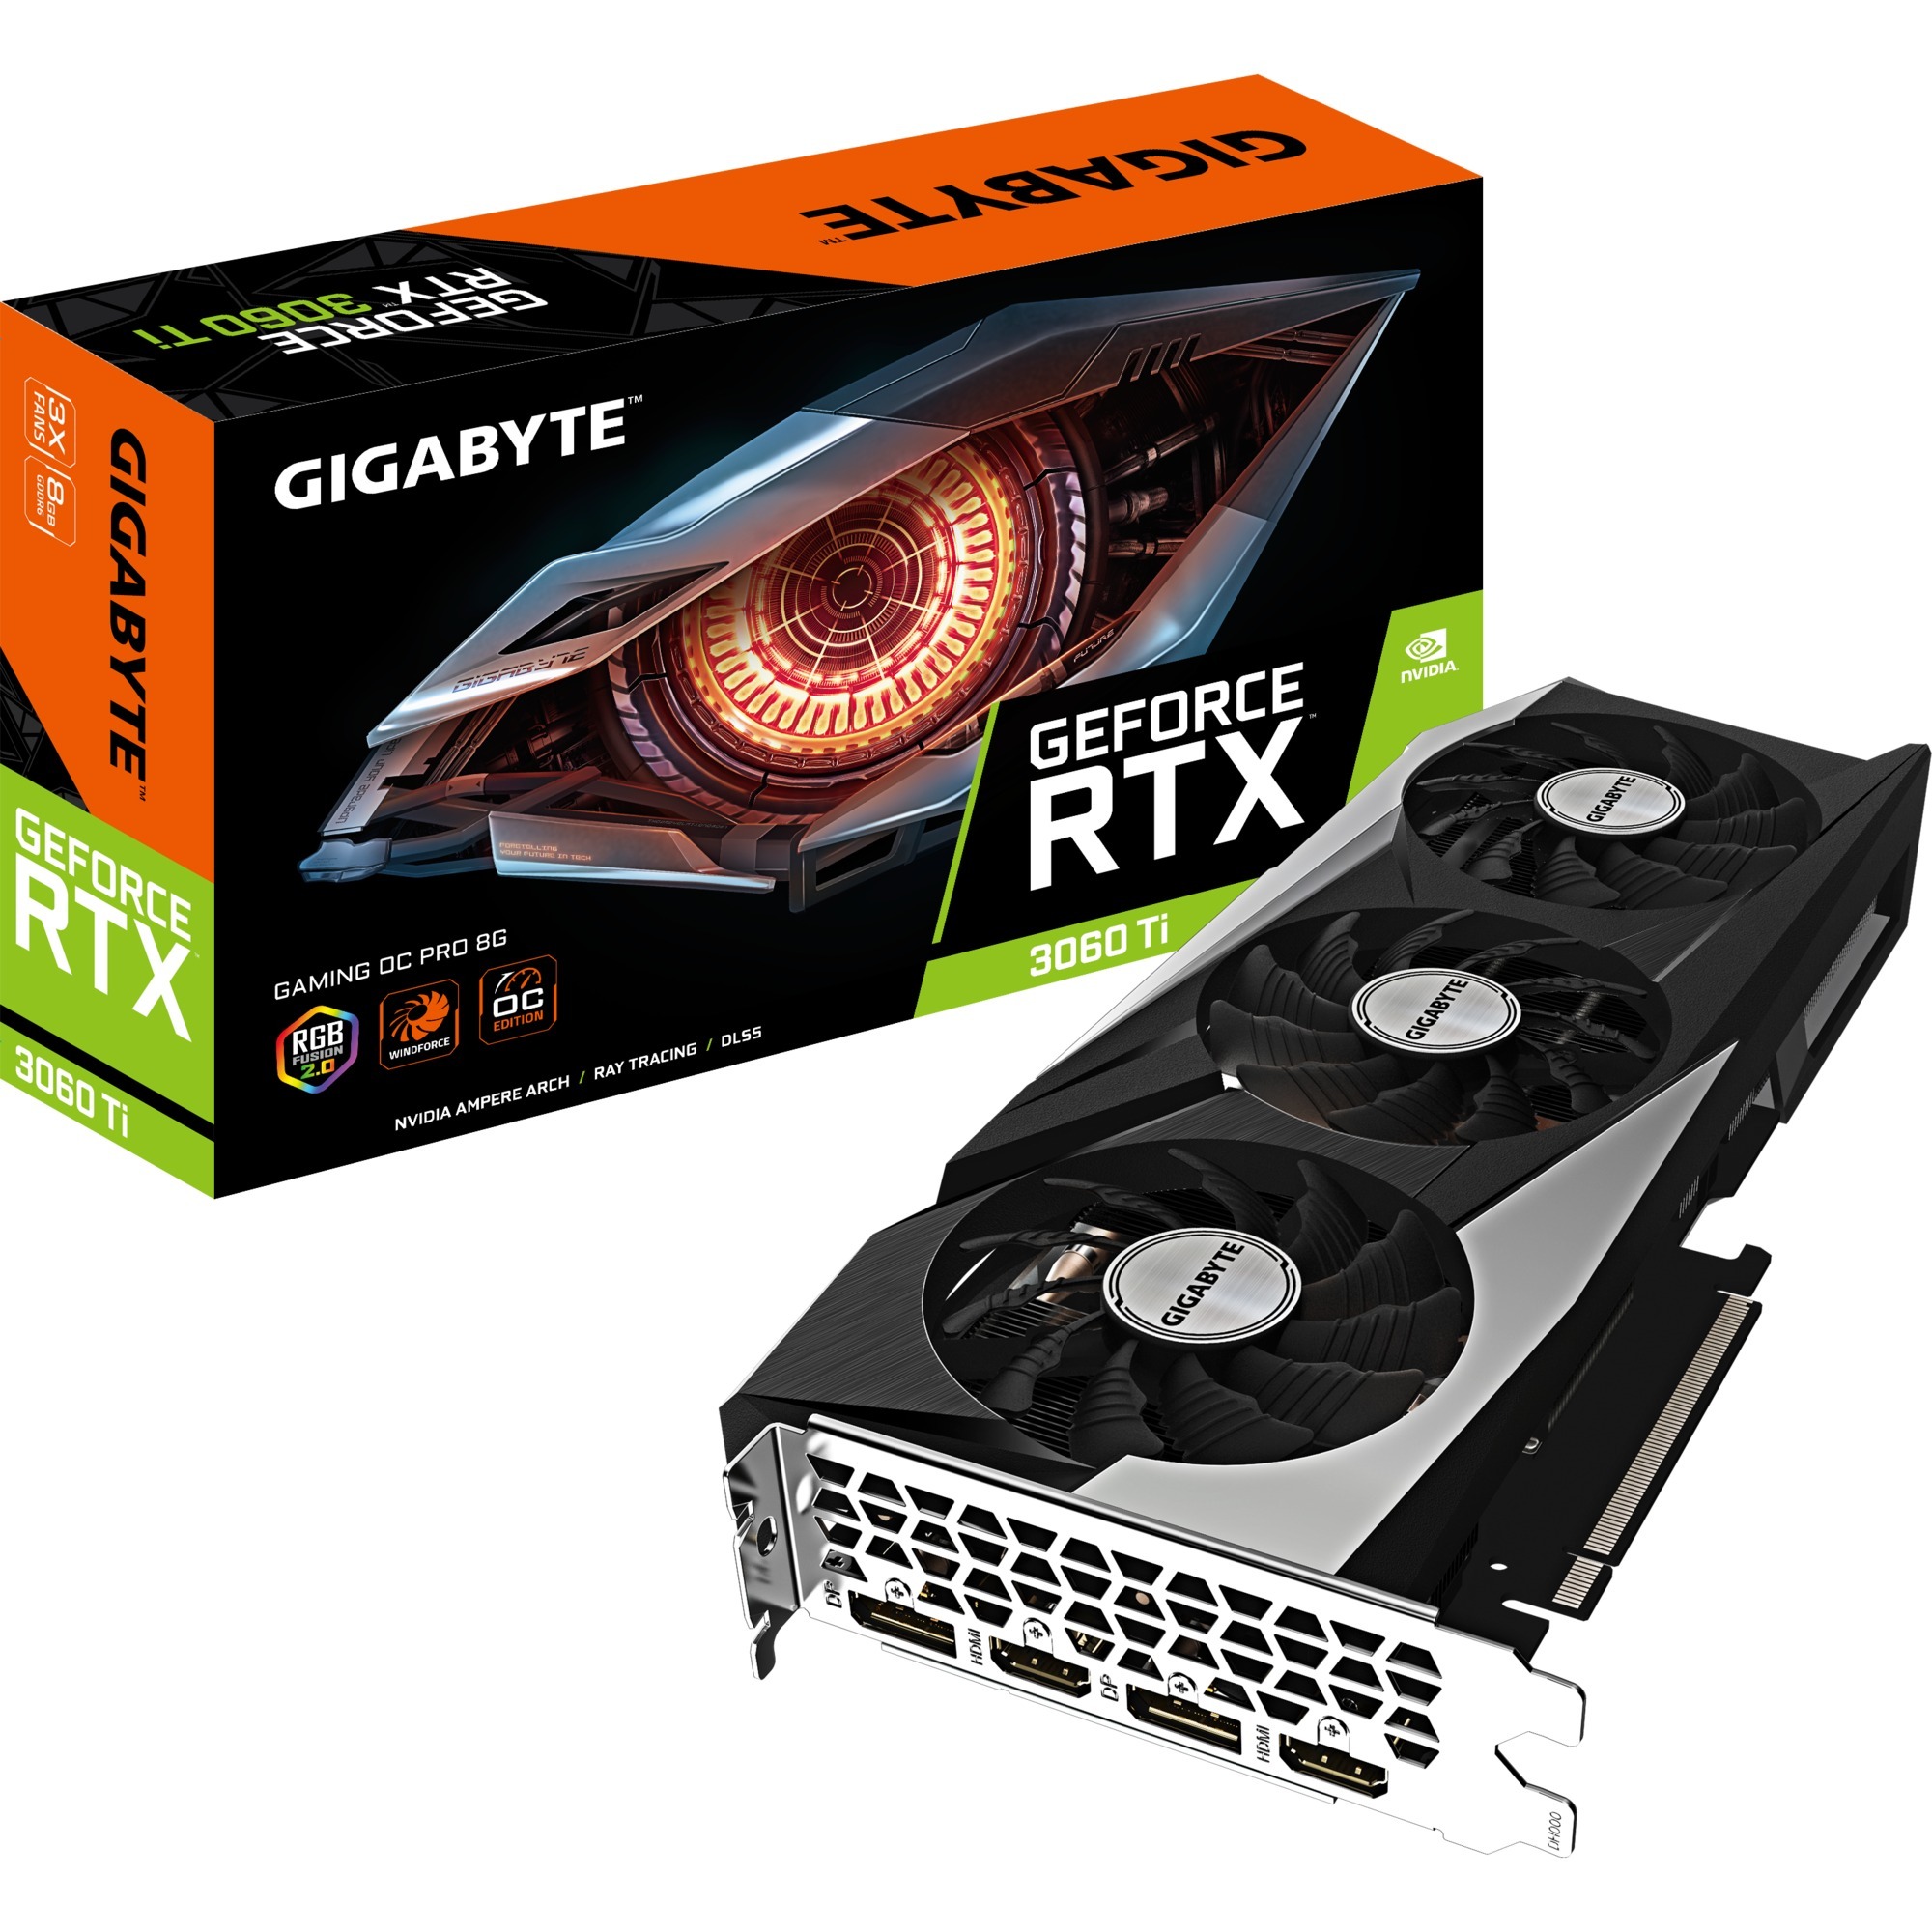 Image of Alternate - GeForce RTX 3060 Ti GAMING PRO OC 8G LHR, Grafikkarte online einkaufen bei Alternate